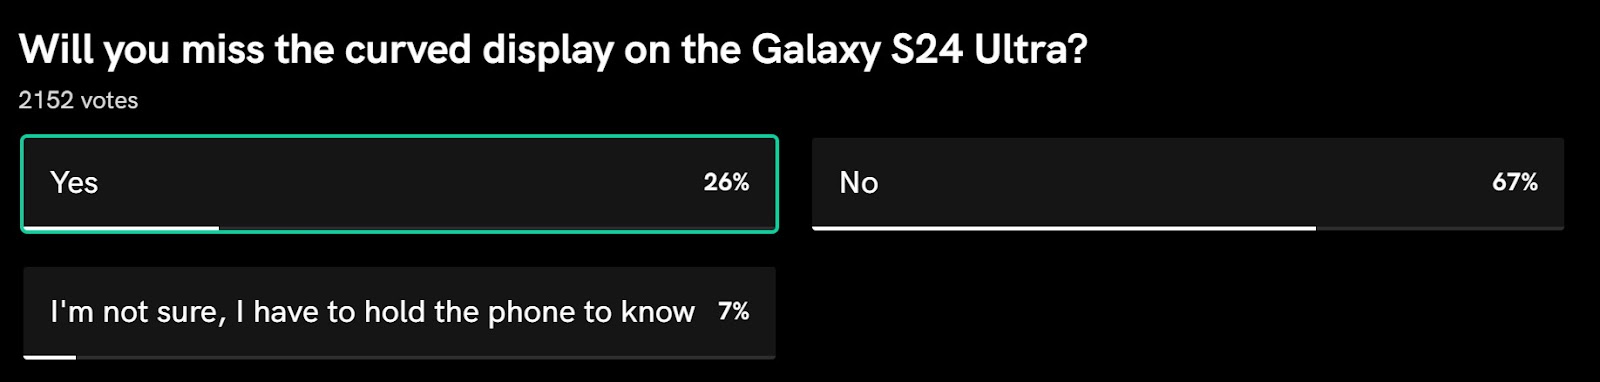 Gần 70% nói 'Không' với màn hình cong, Samsung đã đúng khi thay đổi thiết kế trên S24 Ultra - Ảnh 2.